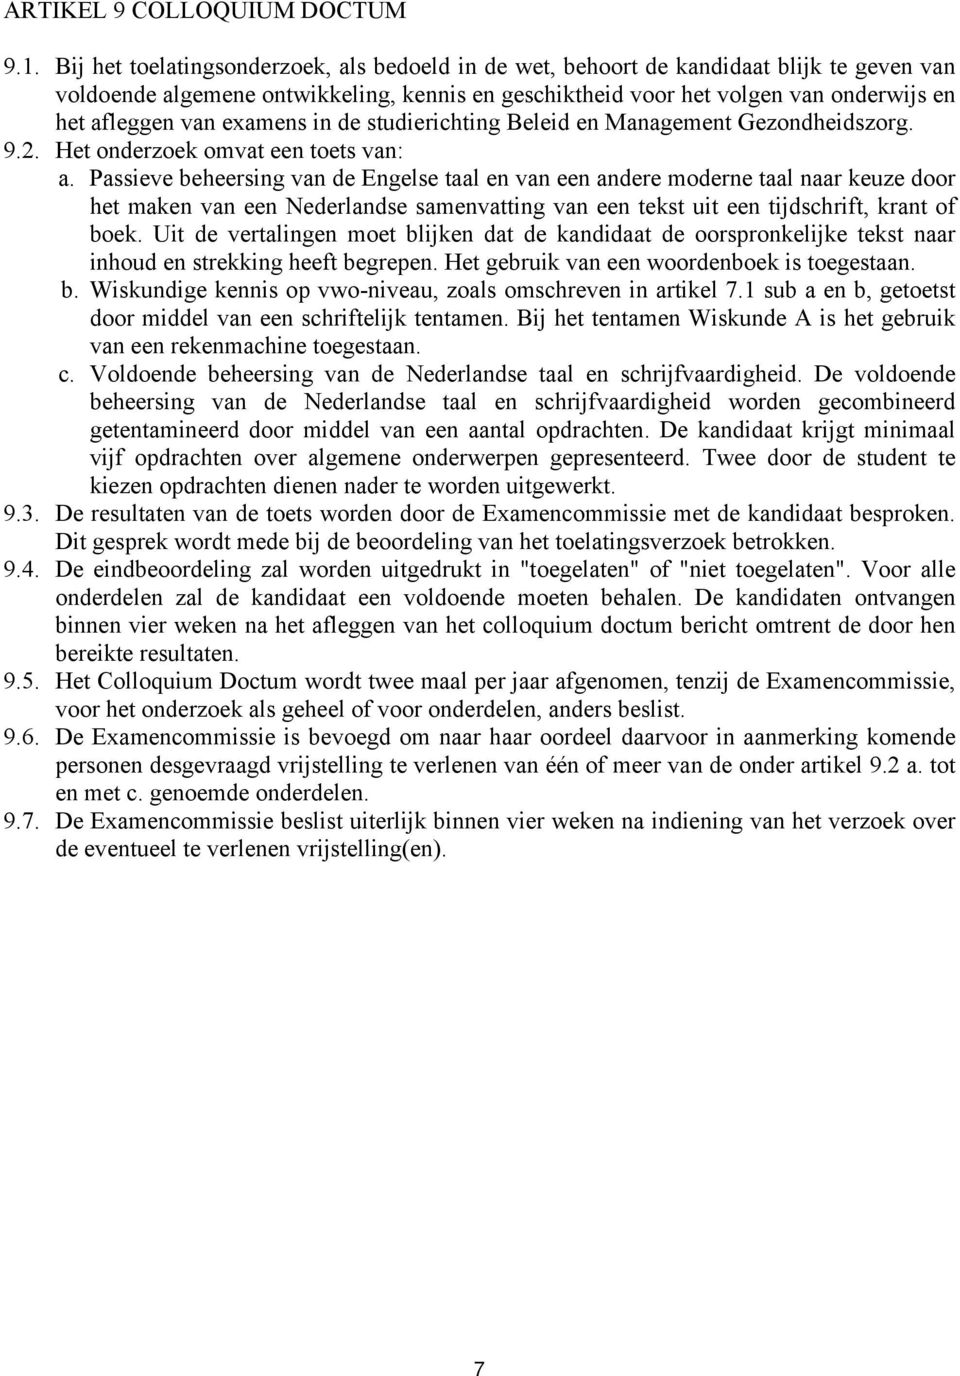 examens in de studierichting Beleid en Management Gezondheidszorg. 9.2. Het onderzoek omvat een toets van: a.